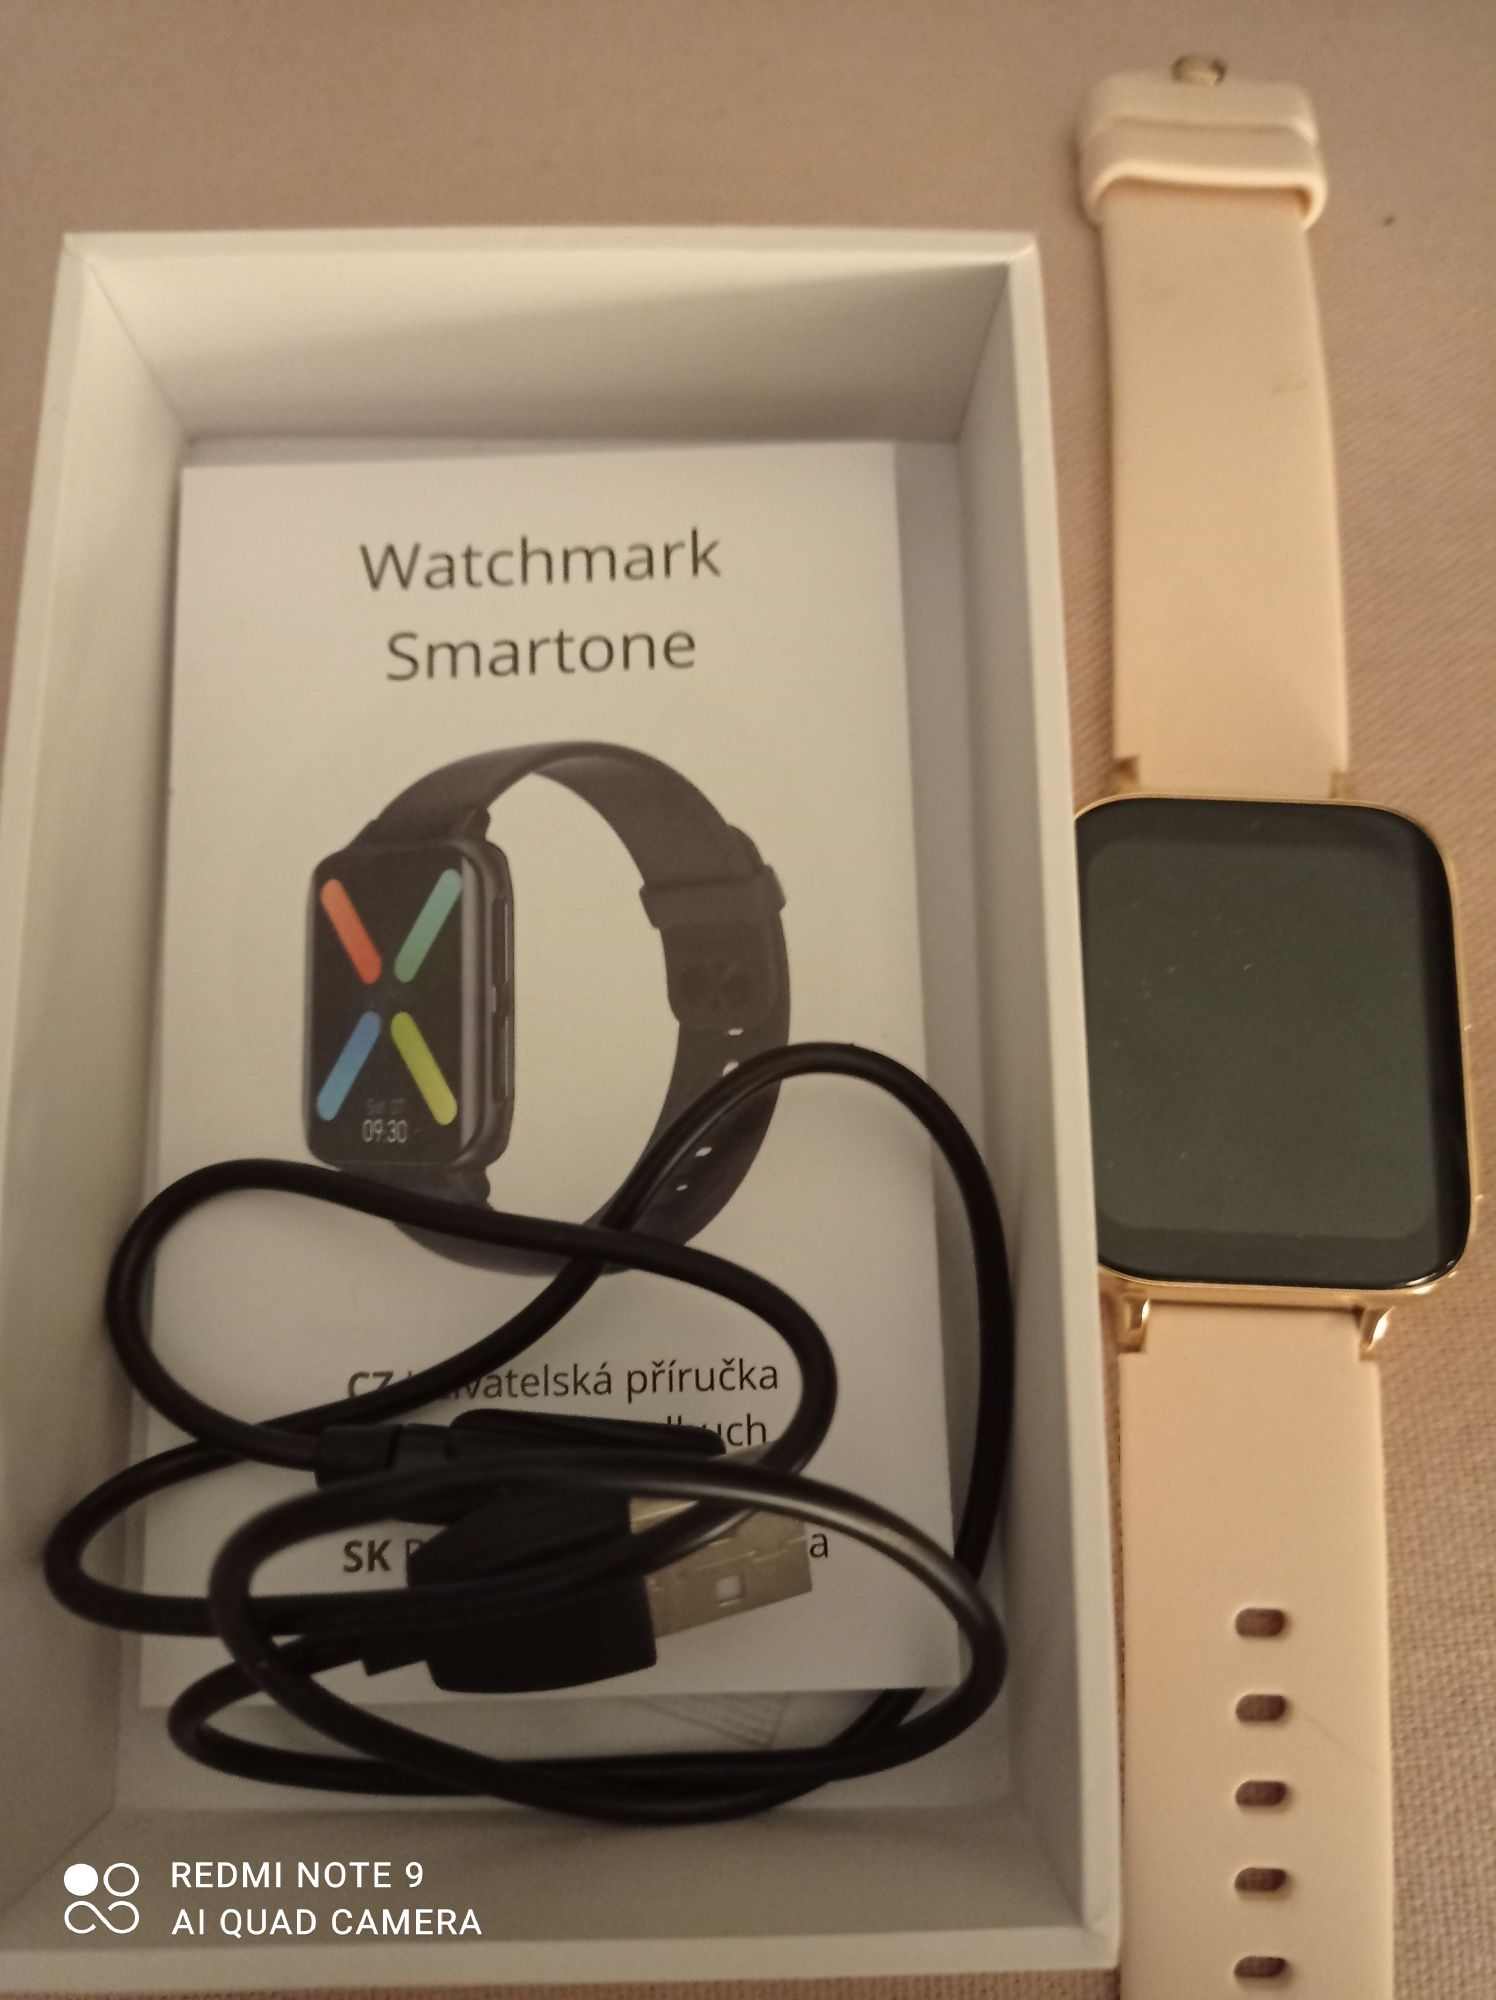 Smartwatch nowy watchmark